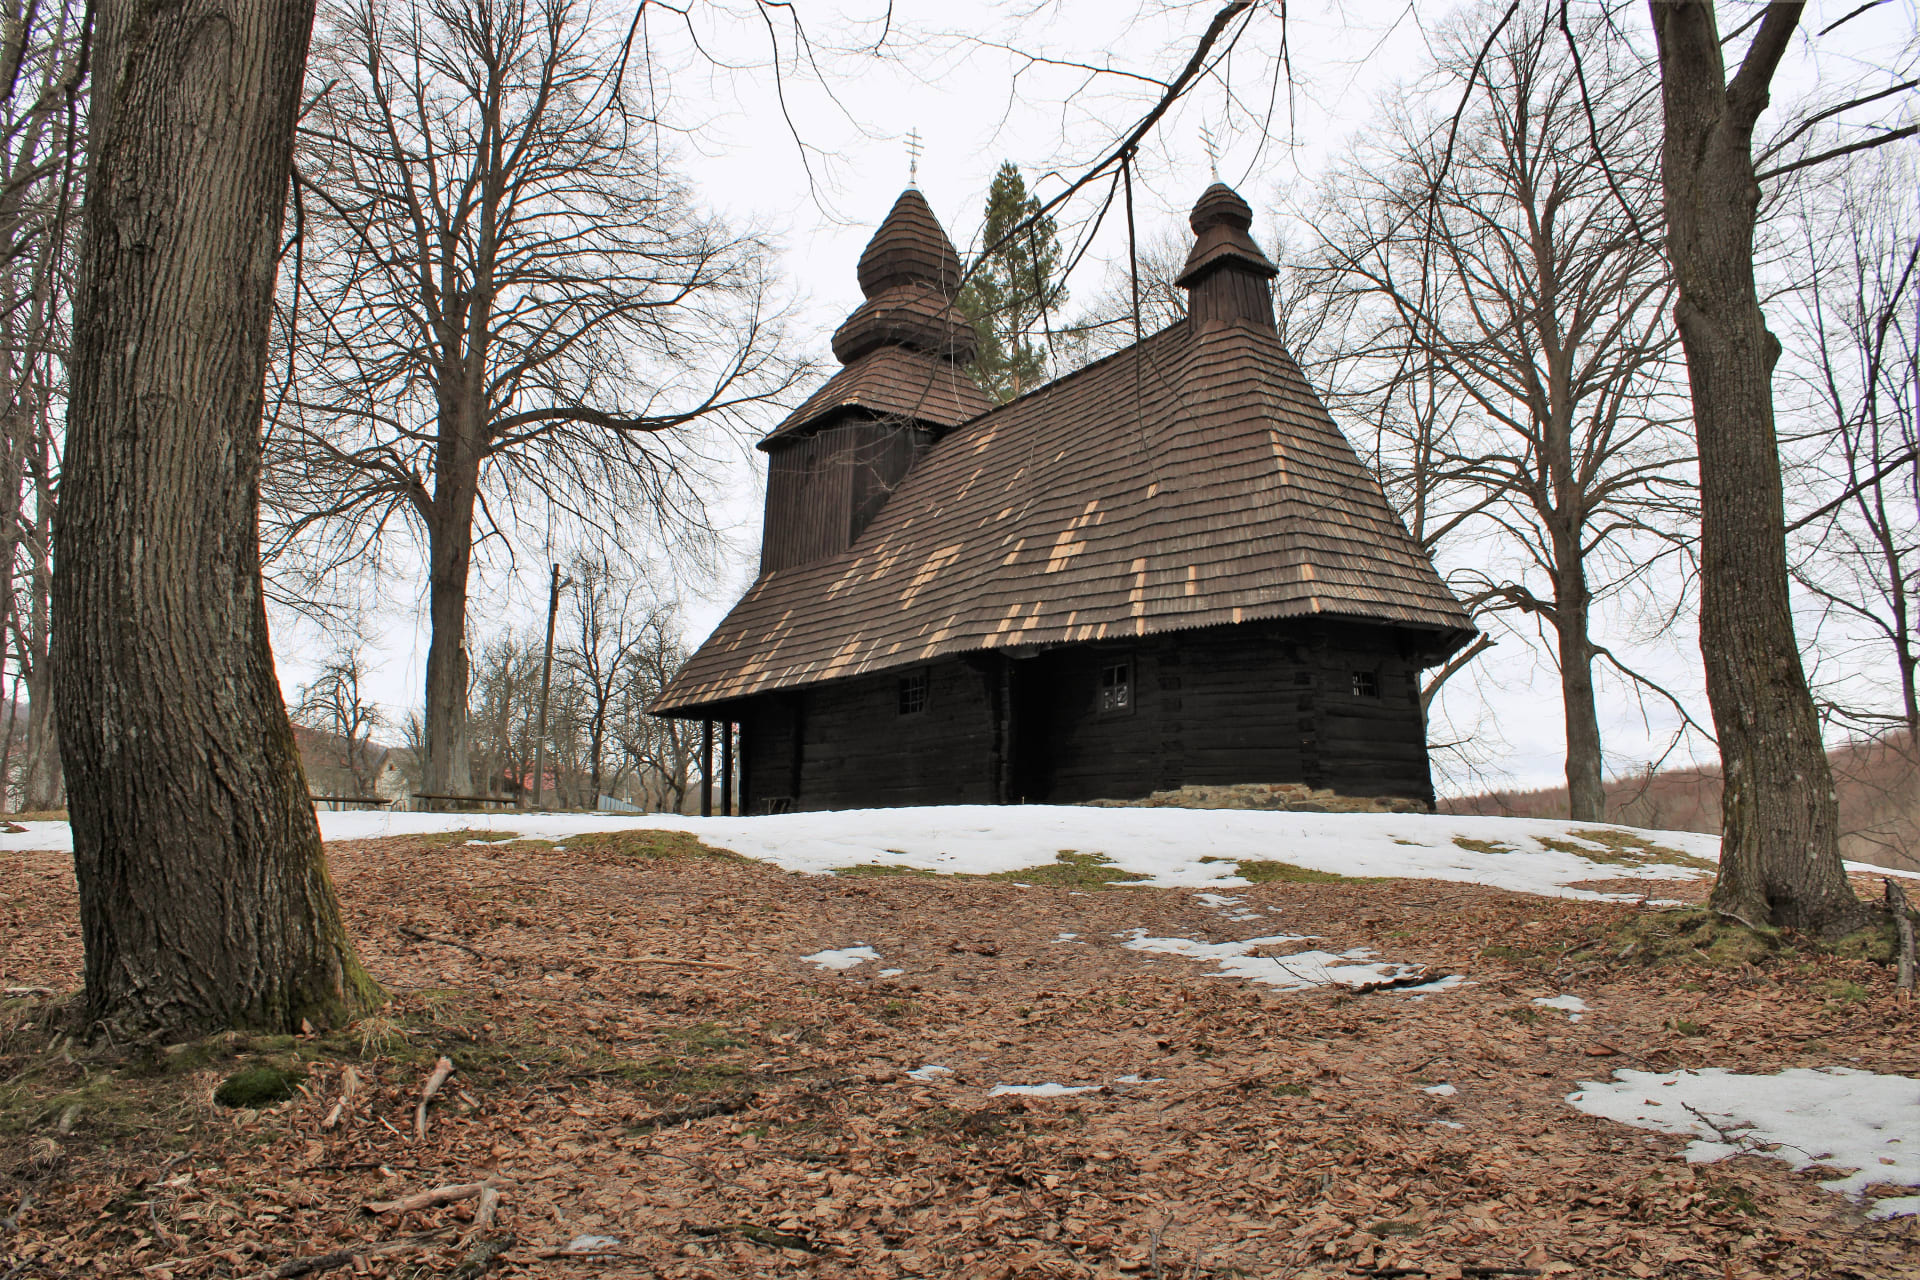 Ruská Bystrá na slovensko-ukrajinských hranicích, dřevěný řeckokatolický kostel, památka UNESCO